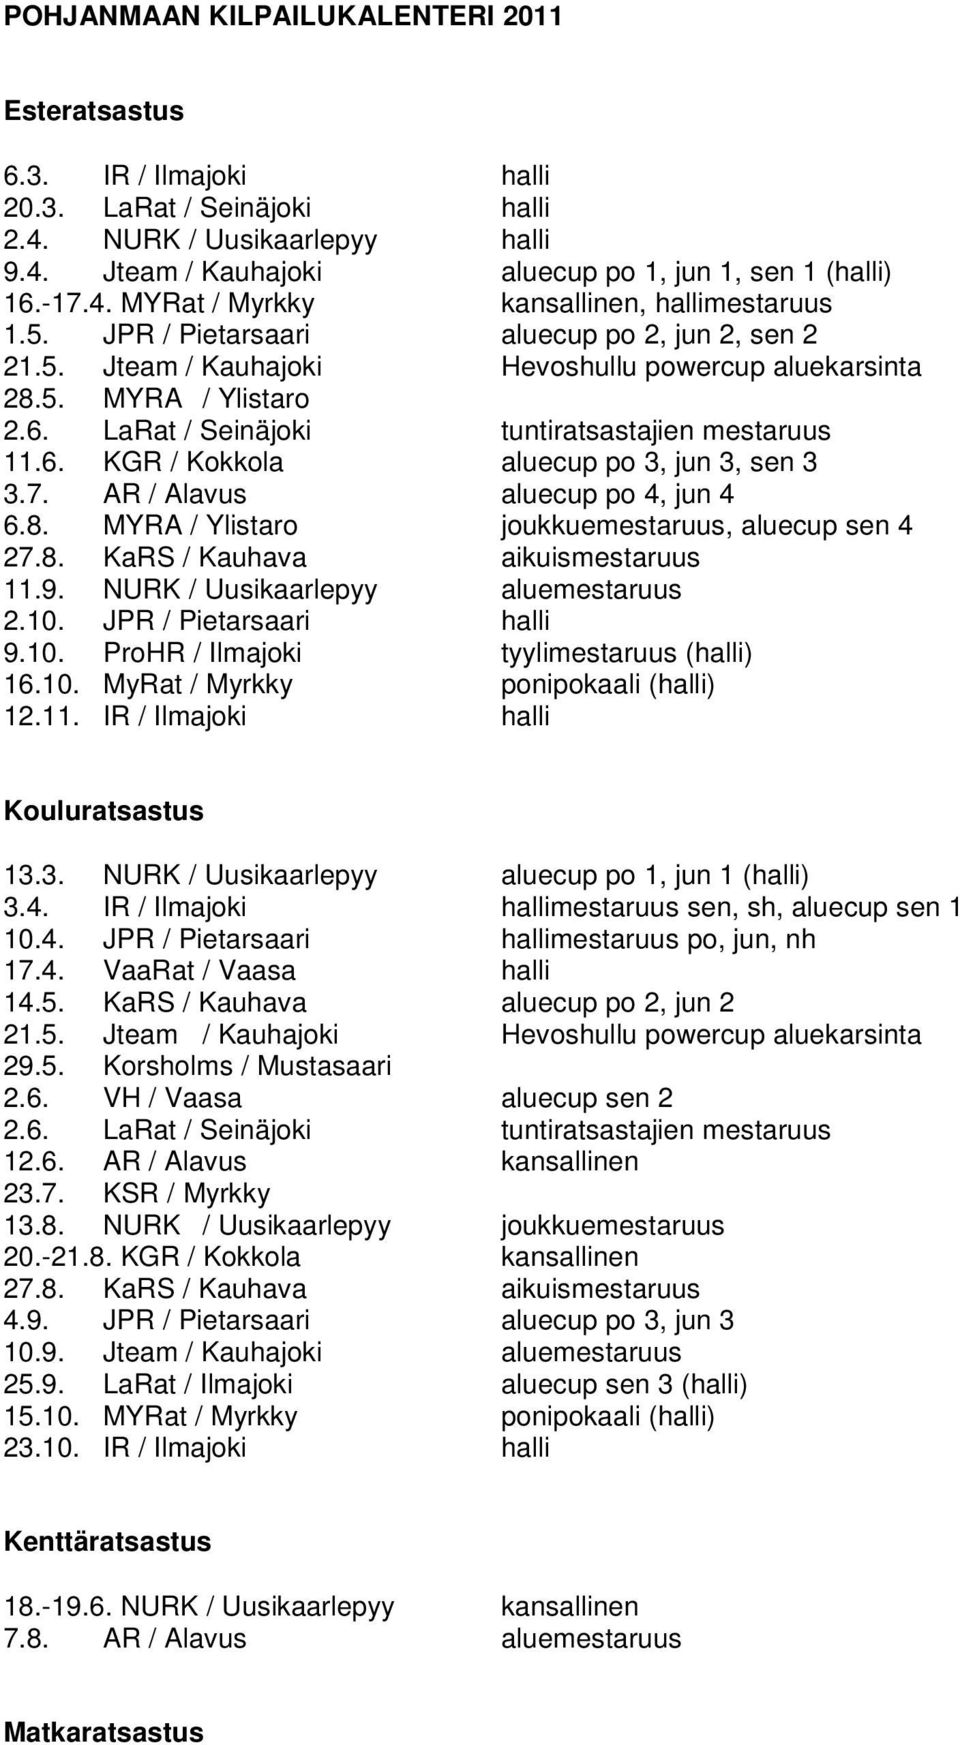 LaRat / Seinäjoki tuntiratsastajien mestaruus 11.6. KGR / Kokkola aluecup po 3, jun 3, sen 3 3.7. AR / Alavus aluecup po 4, jun 4 6.8. MYRA / Ylistaro joukkuemestaruus, aluecup sen 4 27.8. KaRS / Kauhava aikuismestaruus 11.